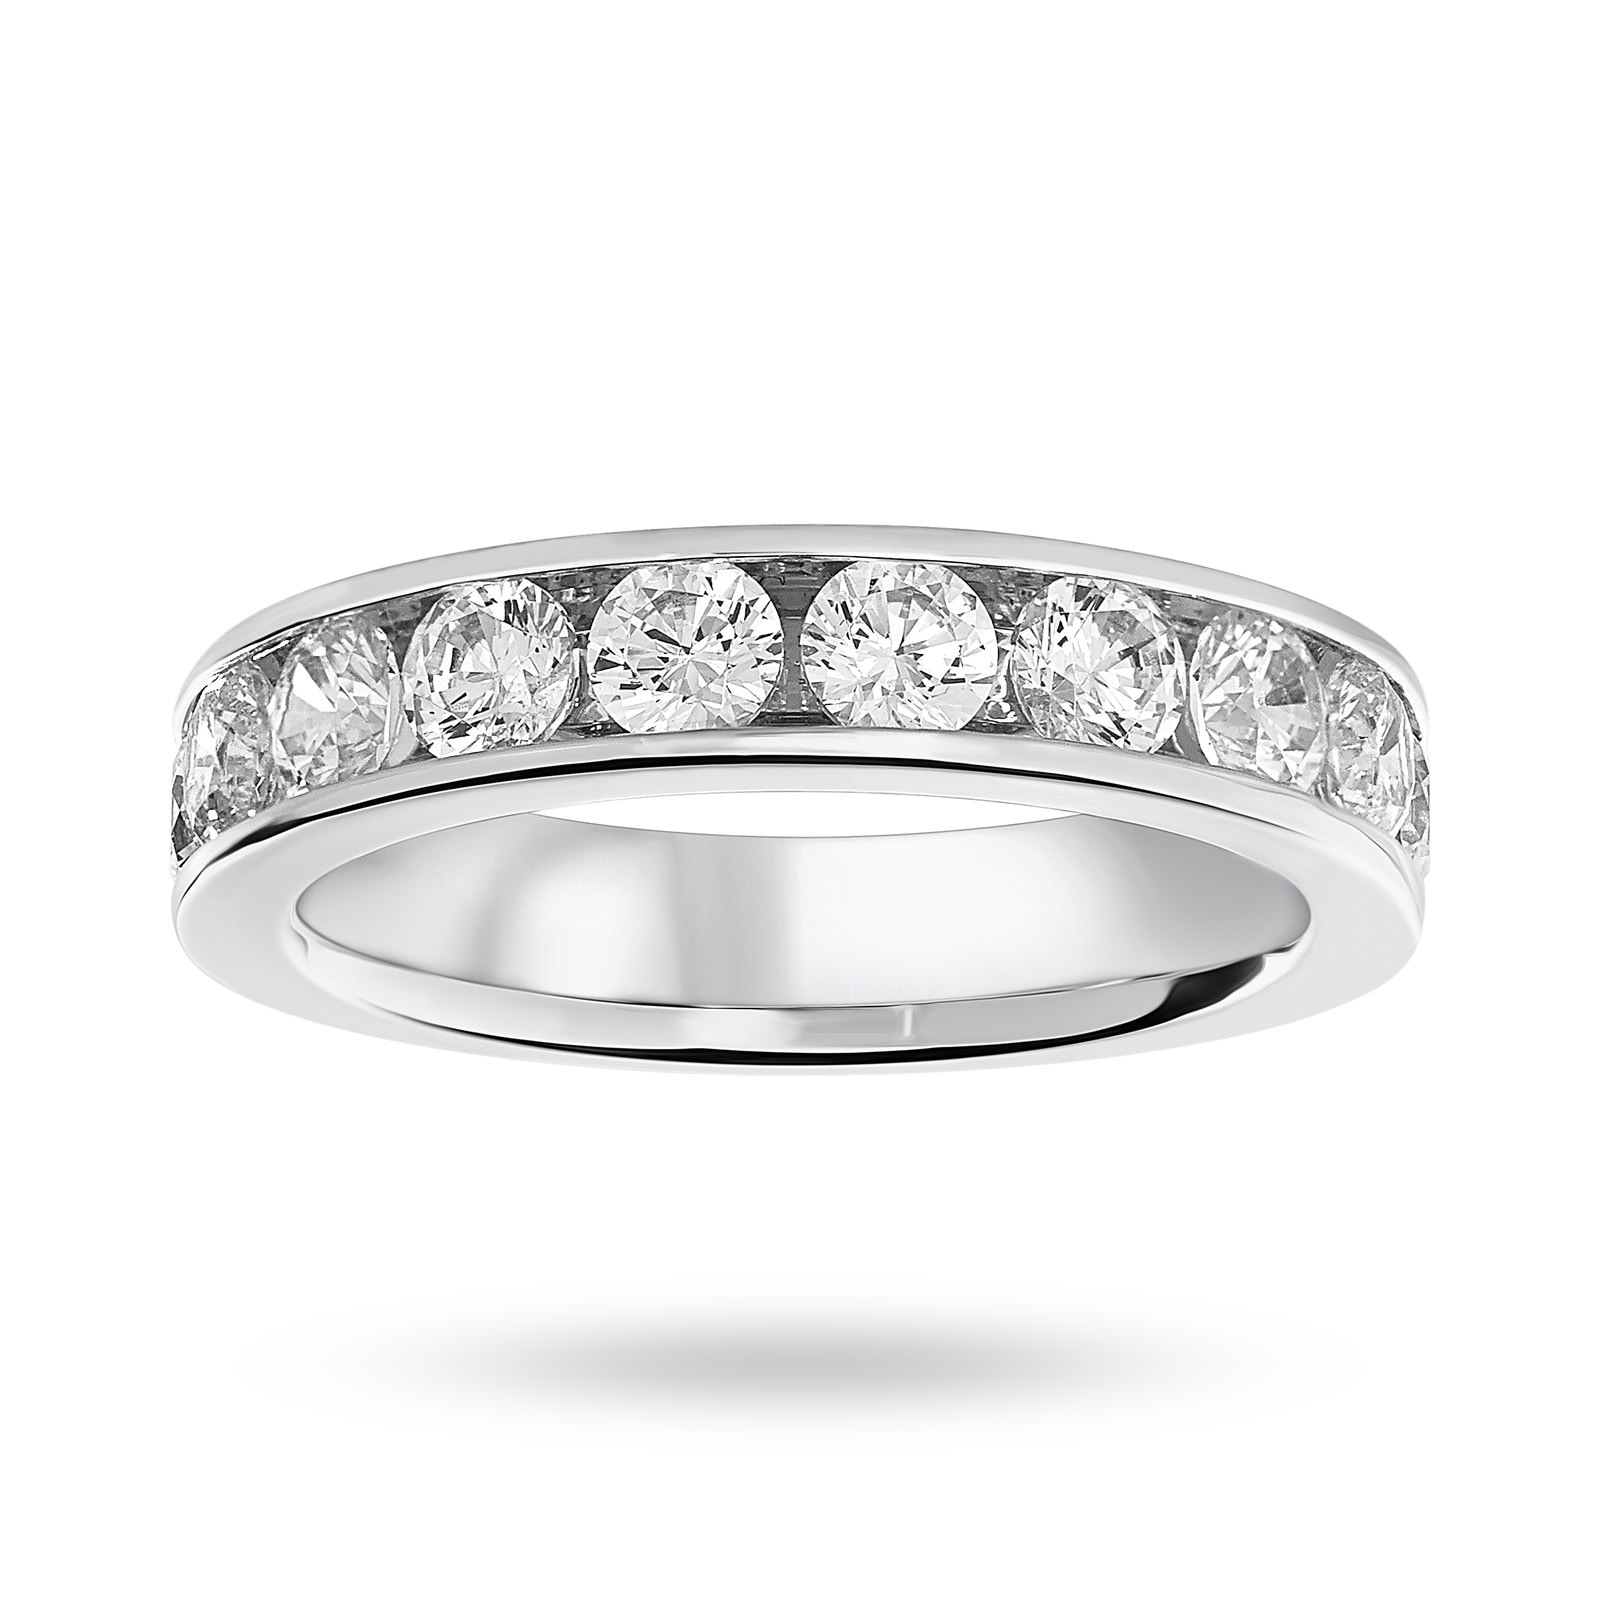 Platinum 1.50 Carat Brilliant Cut Half Eternity Ring - Ring Size P